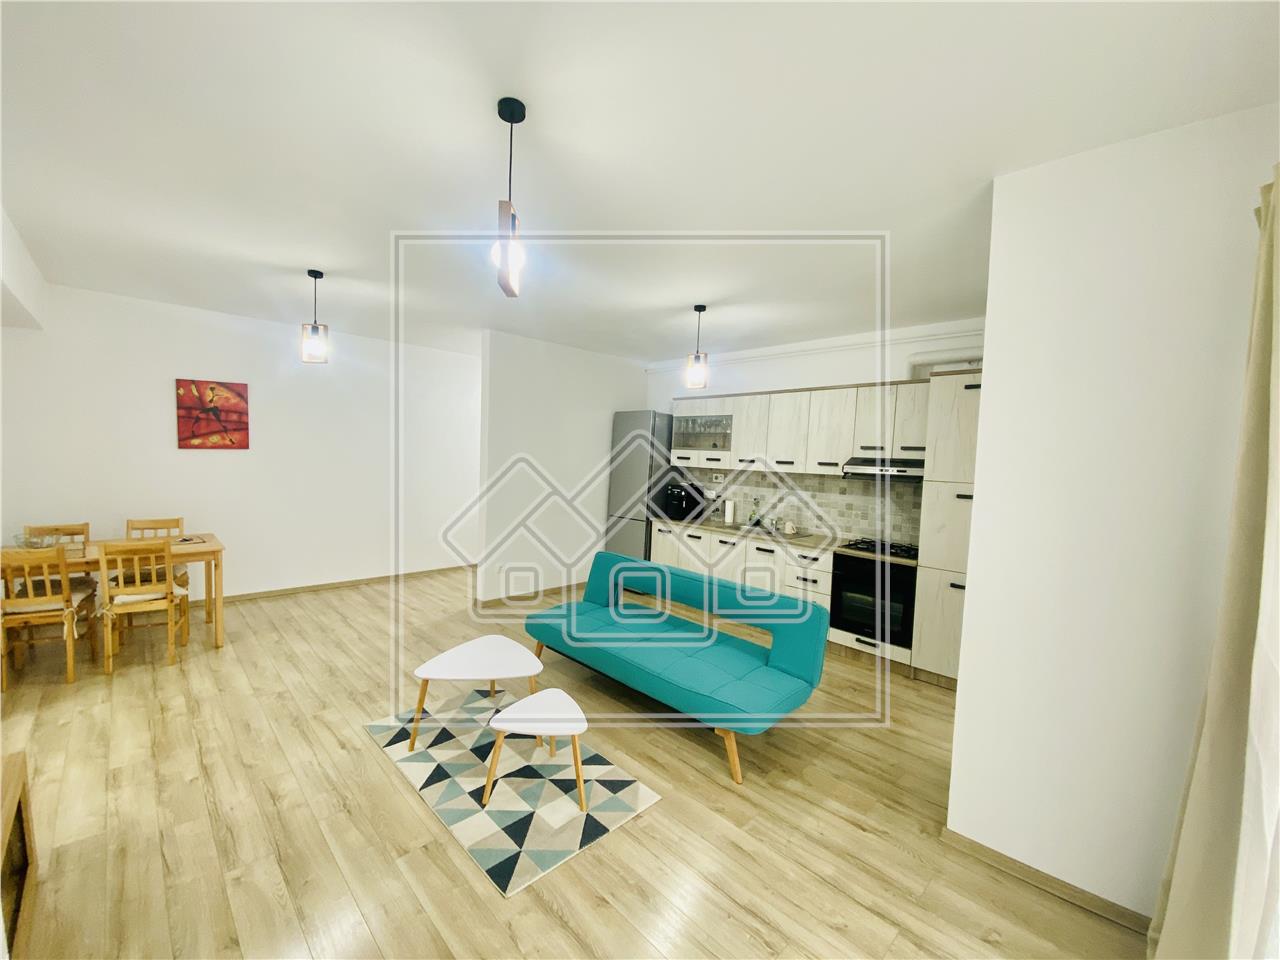 Apartament de vanzare in Sibiu - 2 camere si balcon - Etaj 1/2